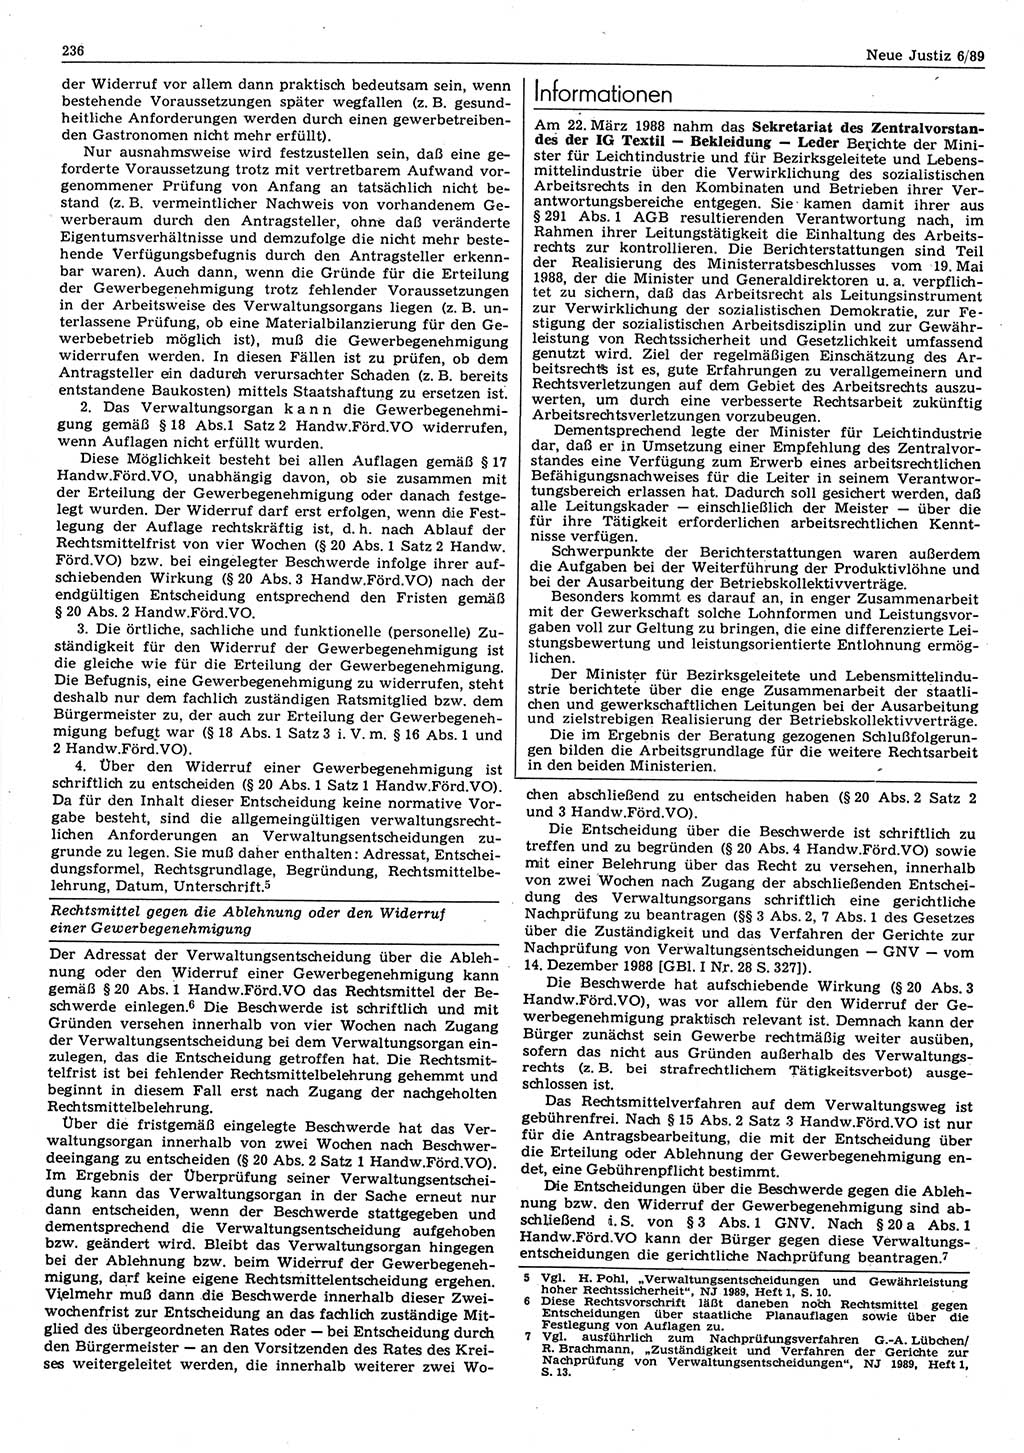 Neue Justiz (NJ), Zeitschrift für sozialistisches Recht und Gesetzlichkeit [Deutsche Demokratische Republik (DDR)], 43. Jahrgang 1989, Seite 236 (NJ DDR 1989, S. 236)